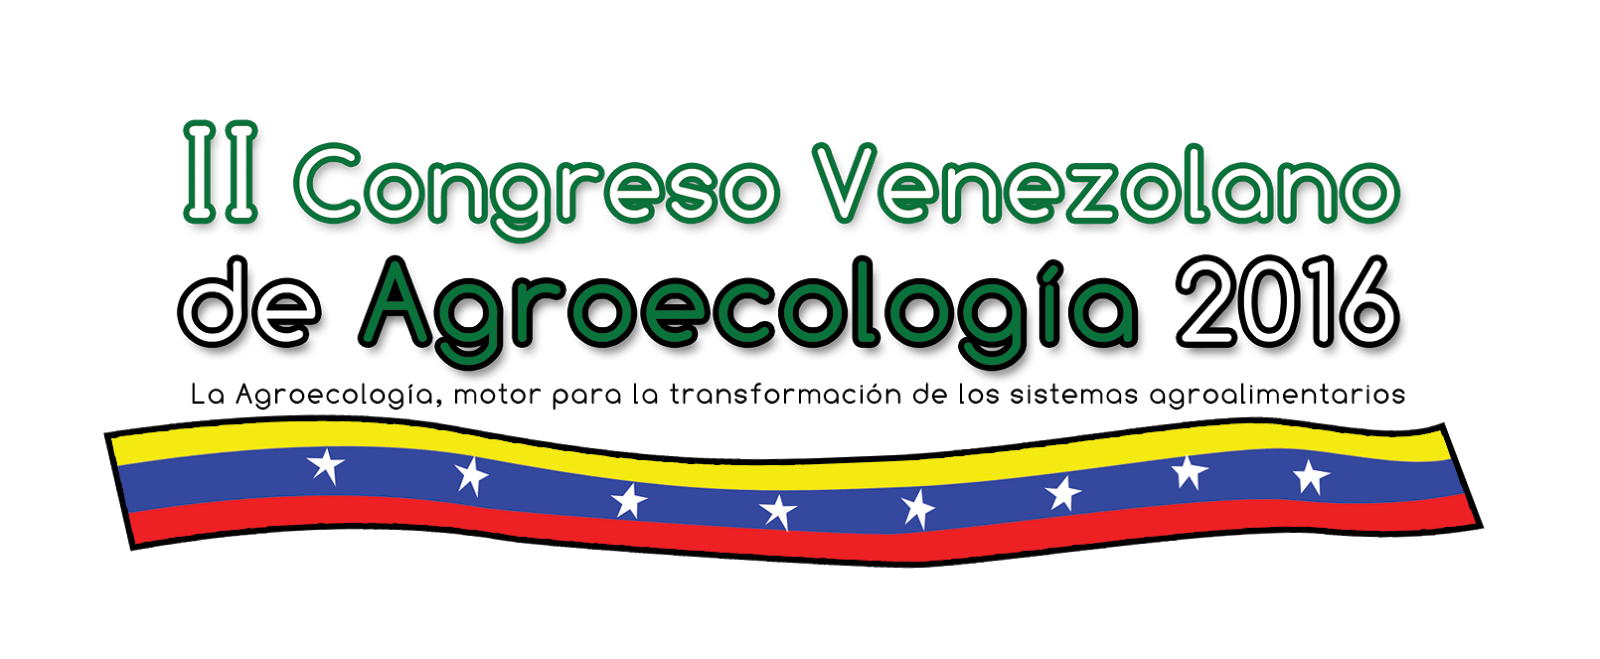 II Congreso Venezolano de Agroecologia 2016